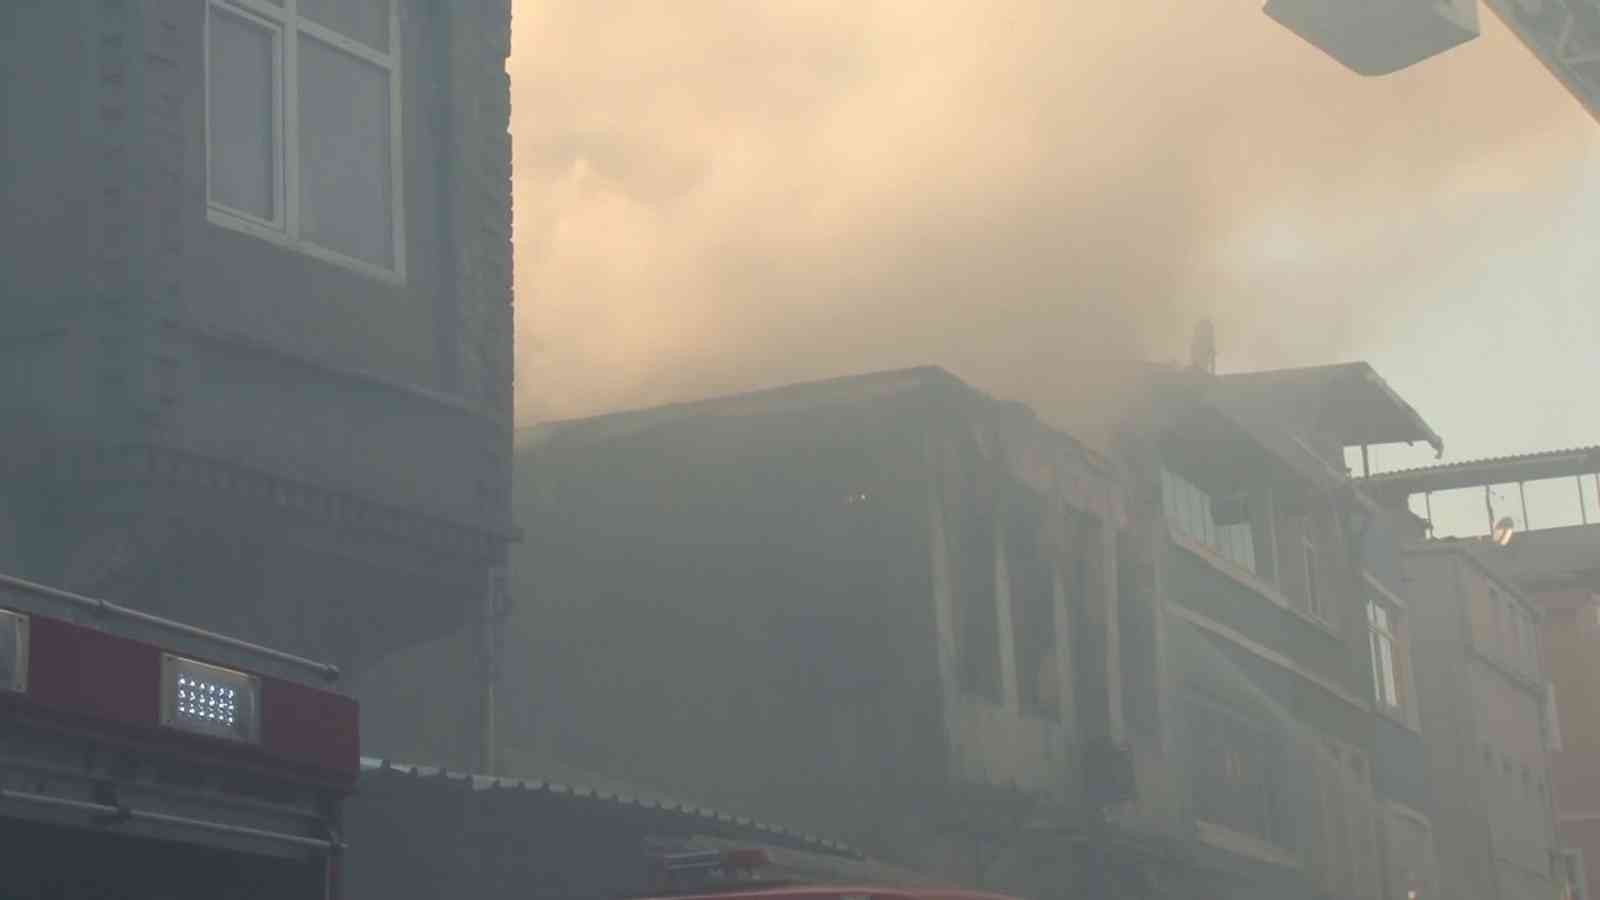 Fatih’te yangın nedeniyle bir kişinin camdan atladığı anlar kamerada #istanbul